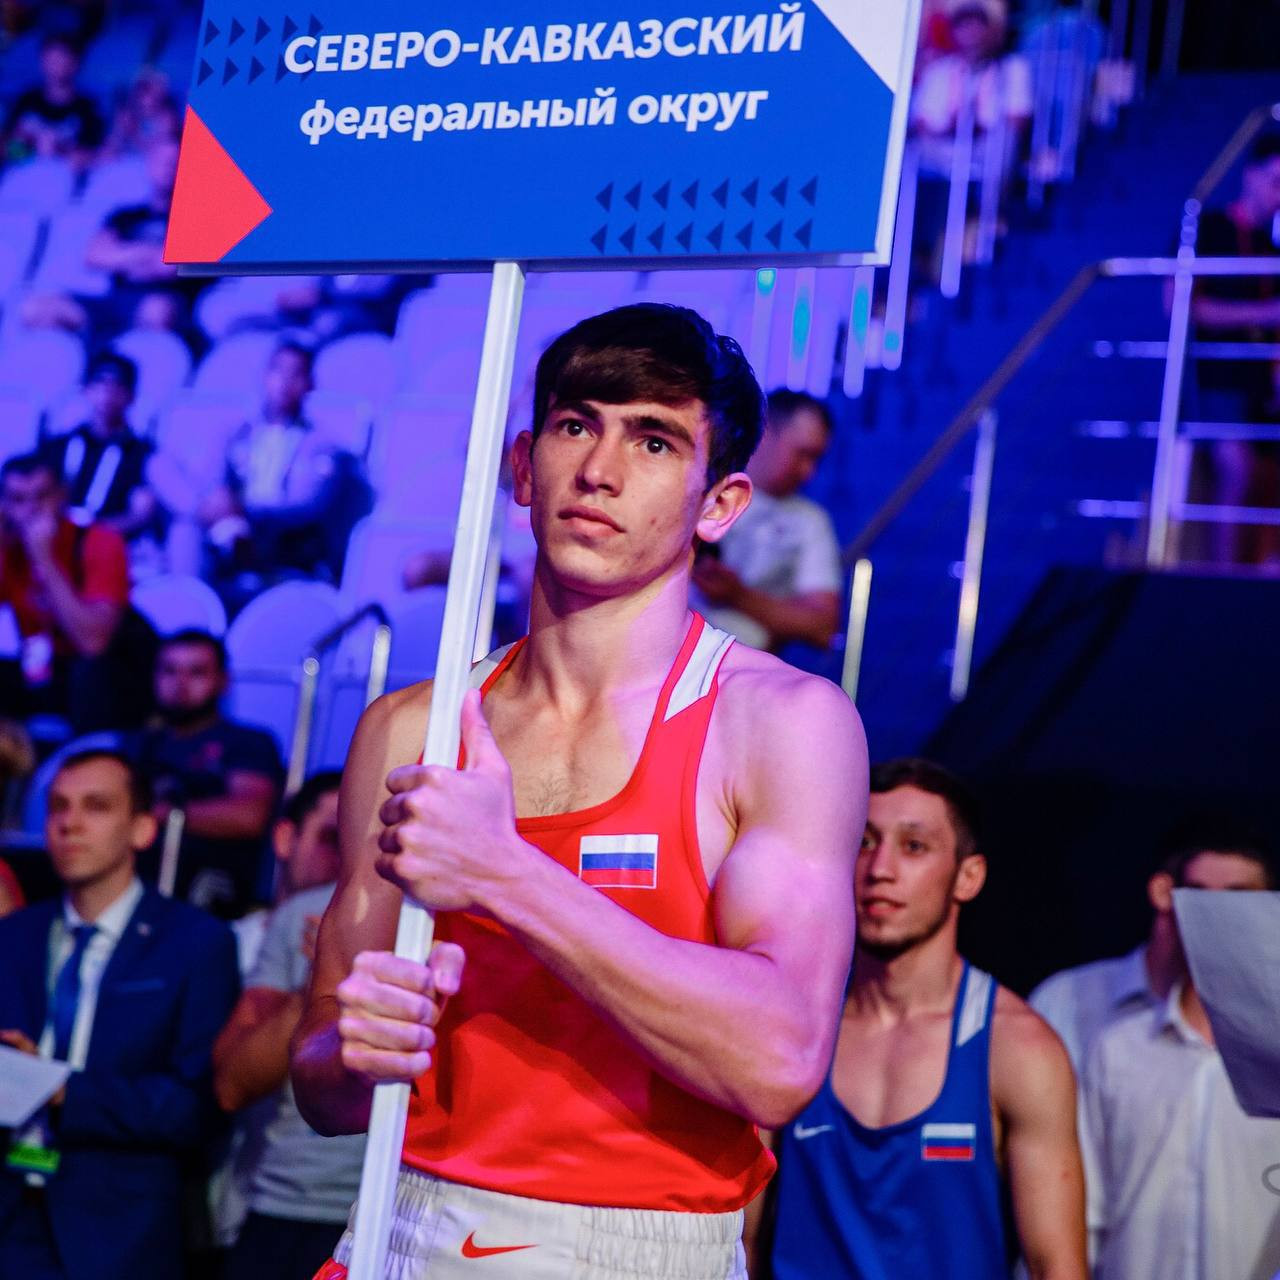 Бронзовые медали на подмосковном ринге завоевали два ставропольских спортсмена